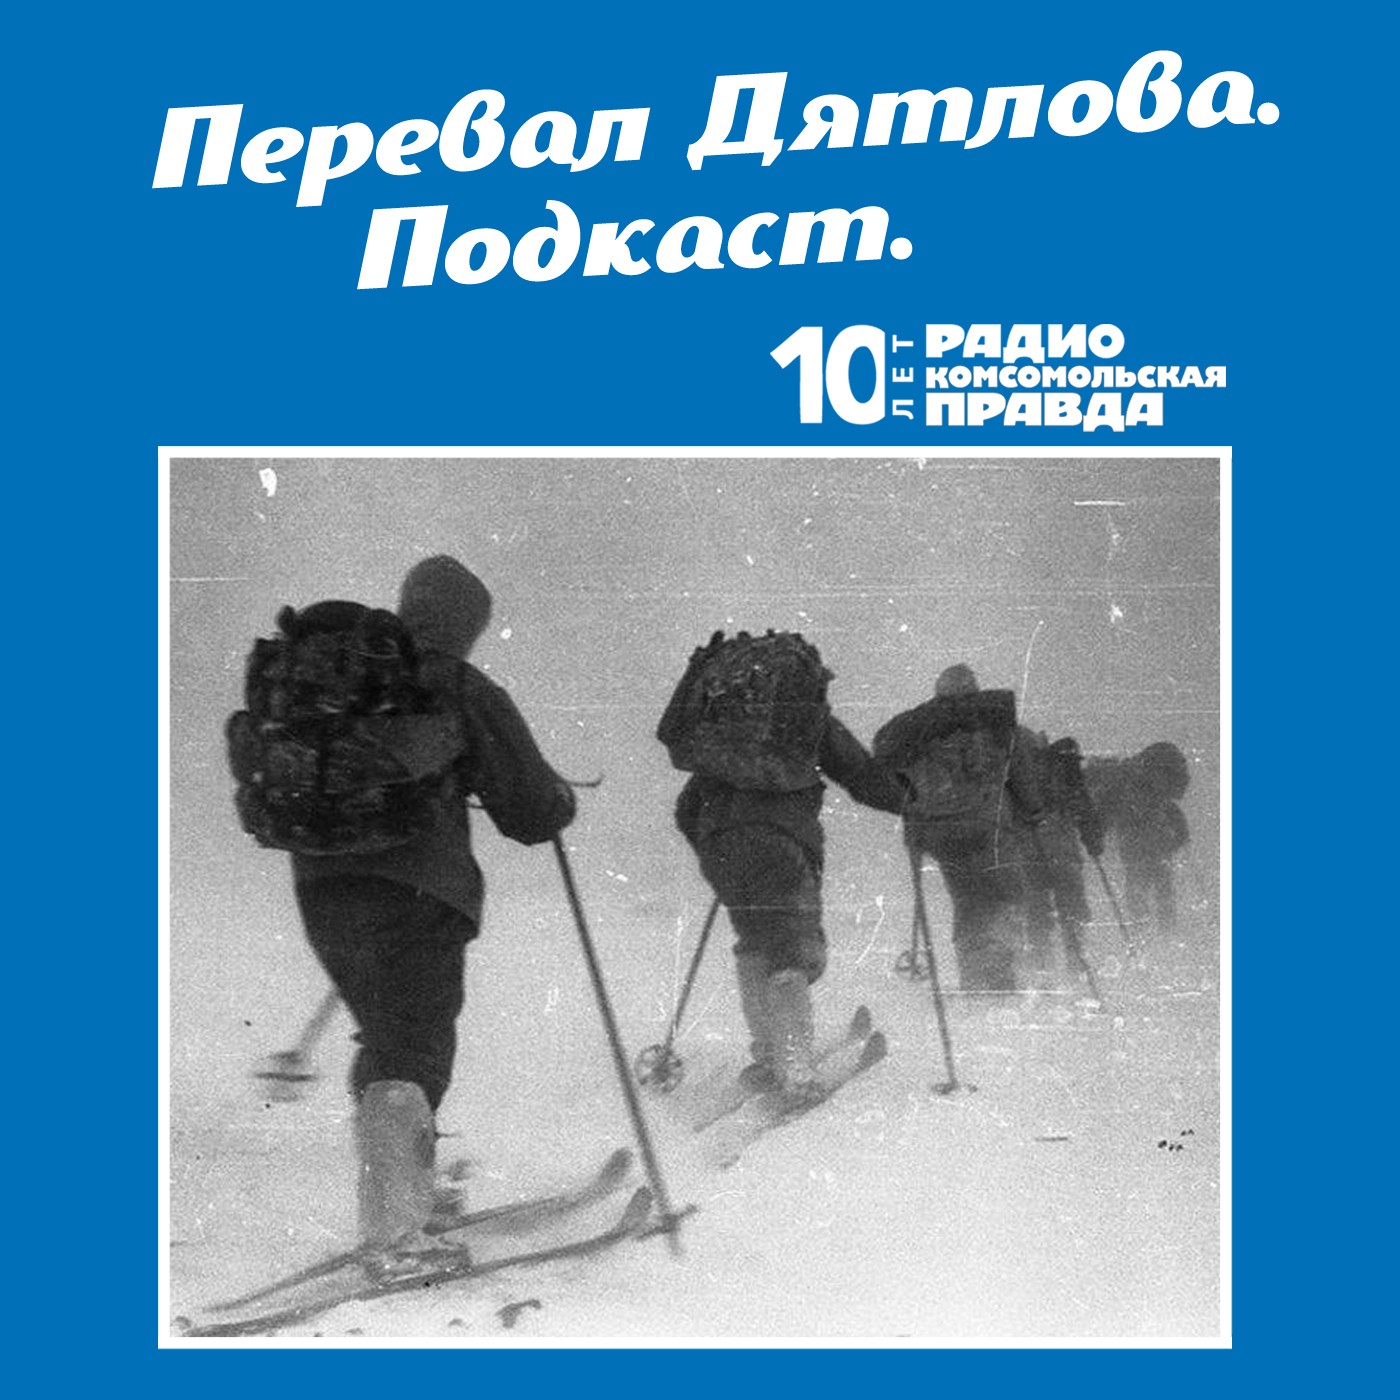 Скачать Трагедия на перевале Дятлова: 64 версии загадочной гибели туристов в 1959 году. Часть 107 и 108 - Радио «Комсомольская правда»